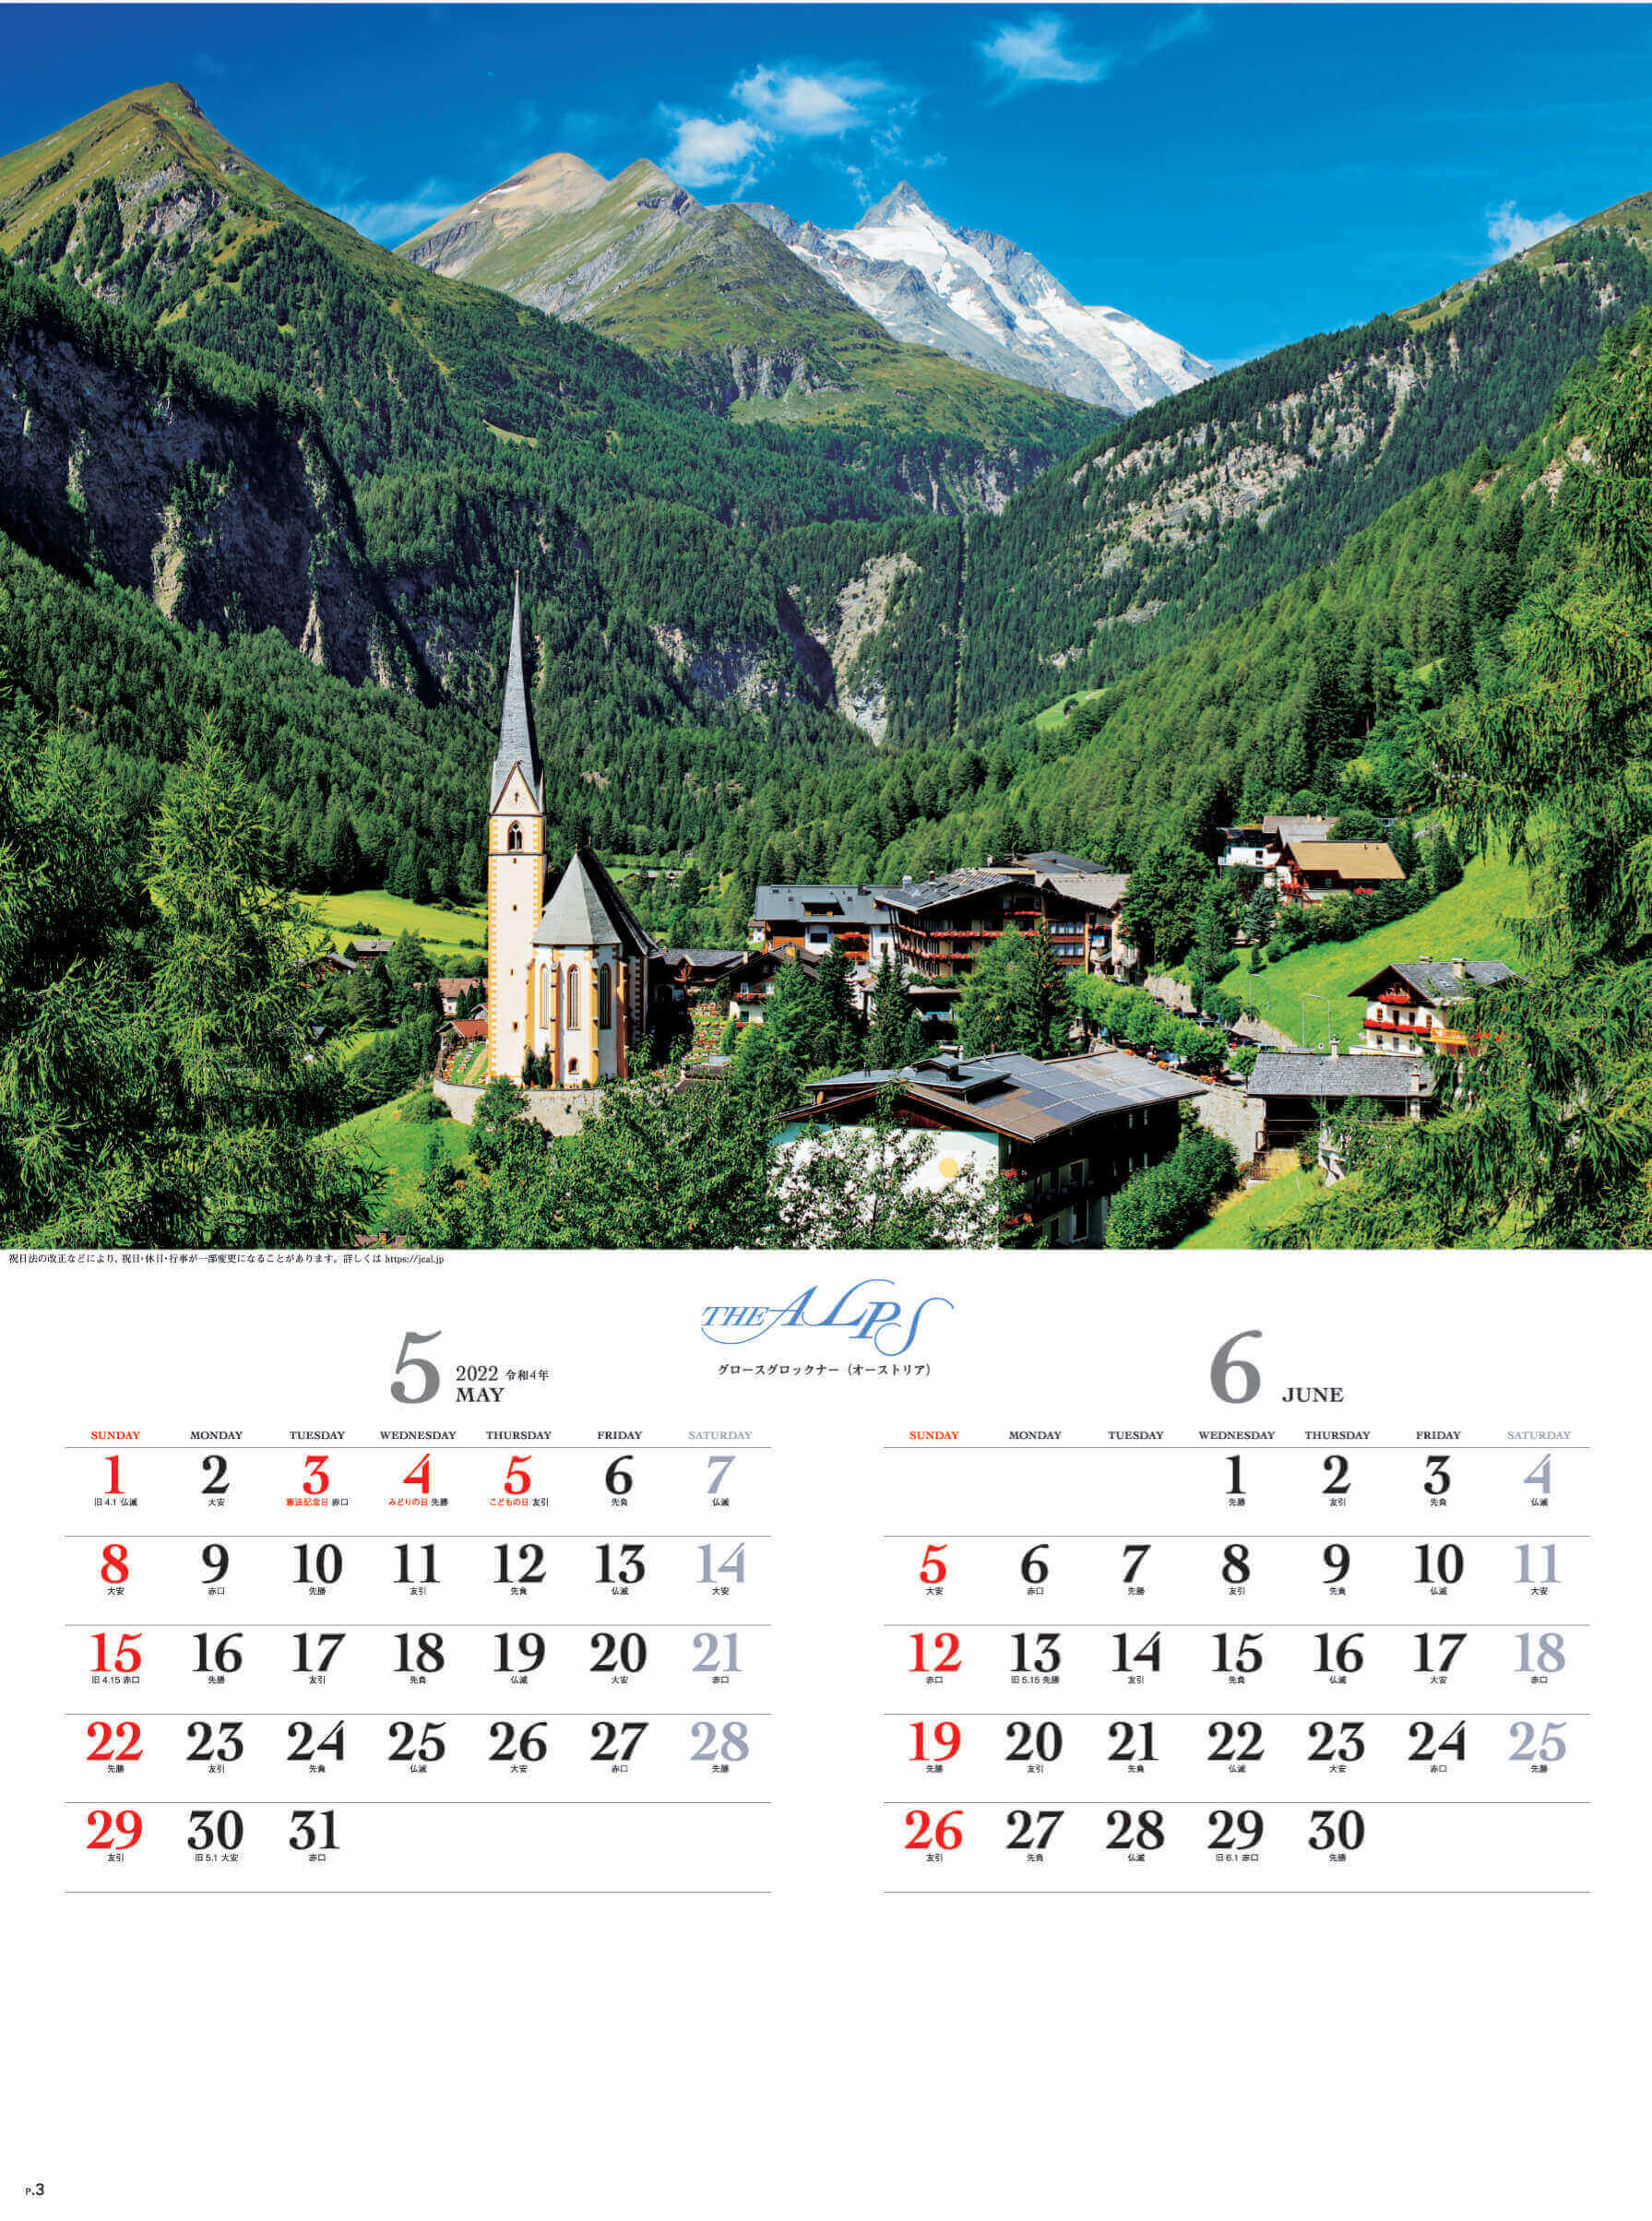 5-6月 グロースグロックナー(オーストリア) アルプス 2022年カレンダーの画像